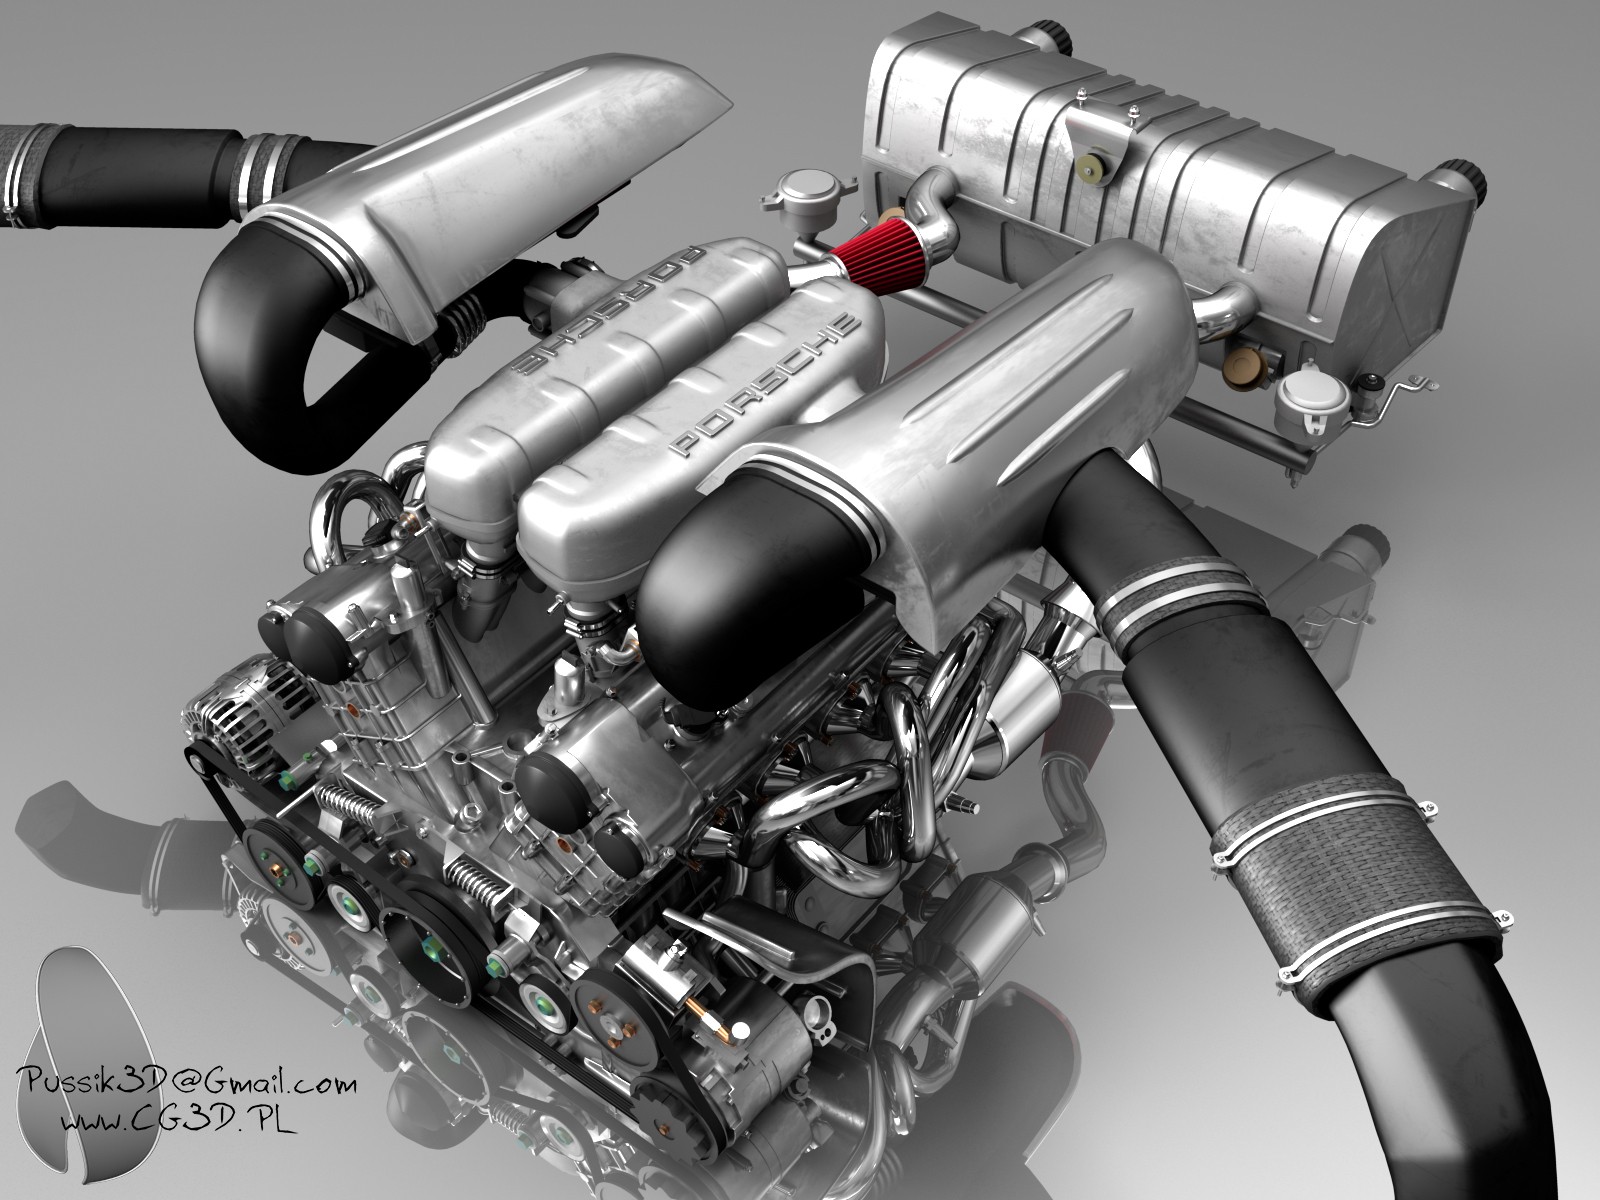 Porsche_Carrera_GT_Engine_by_pussik.jpg